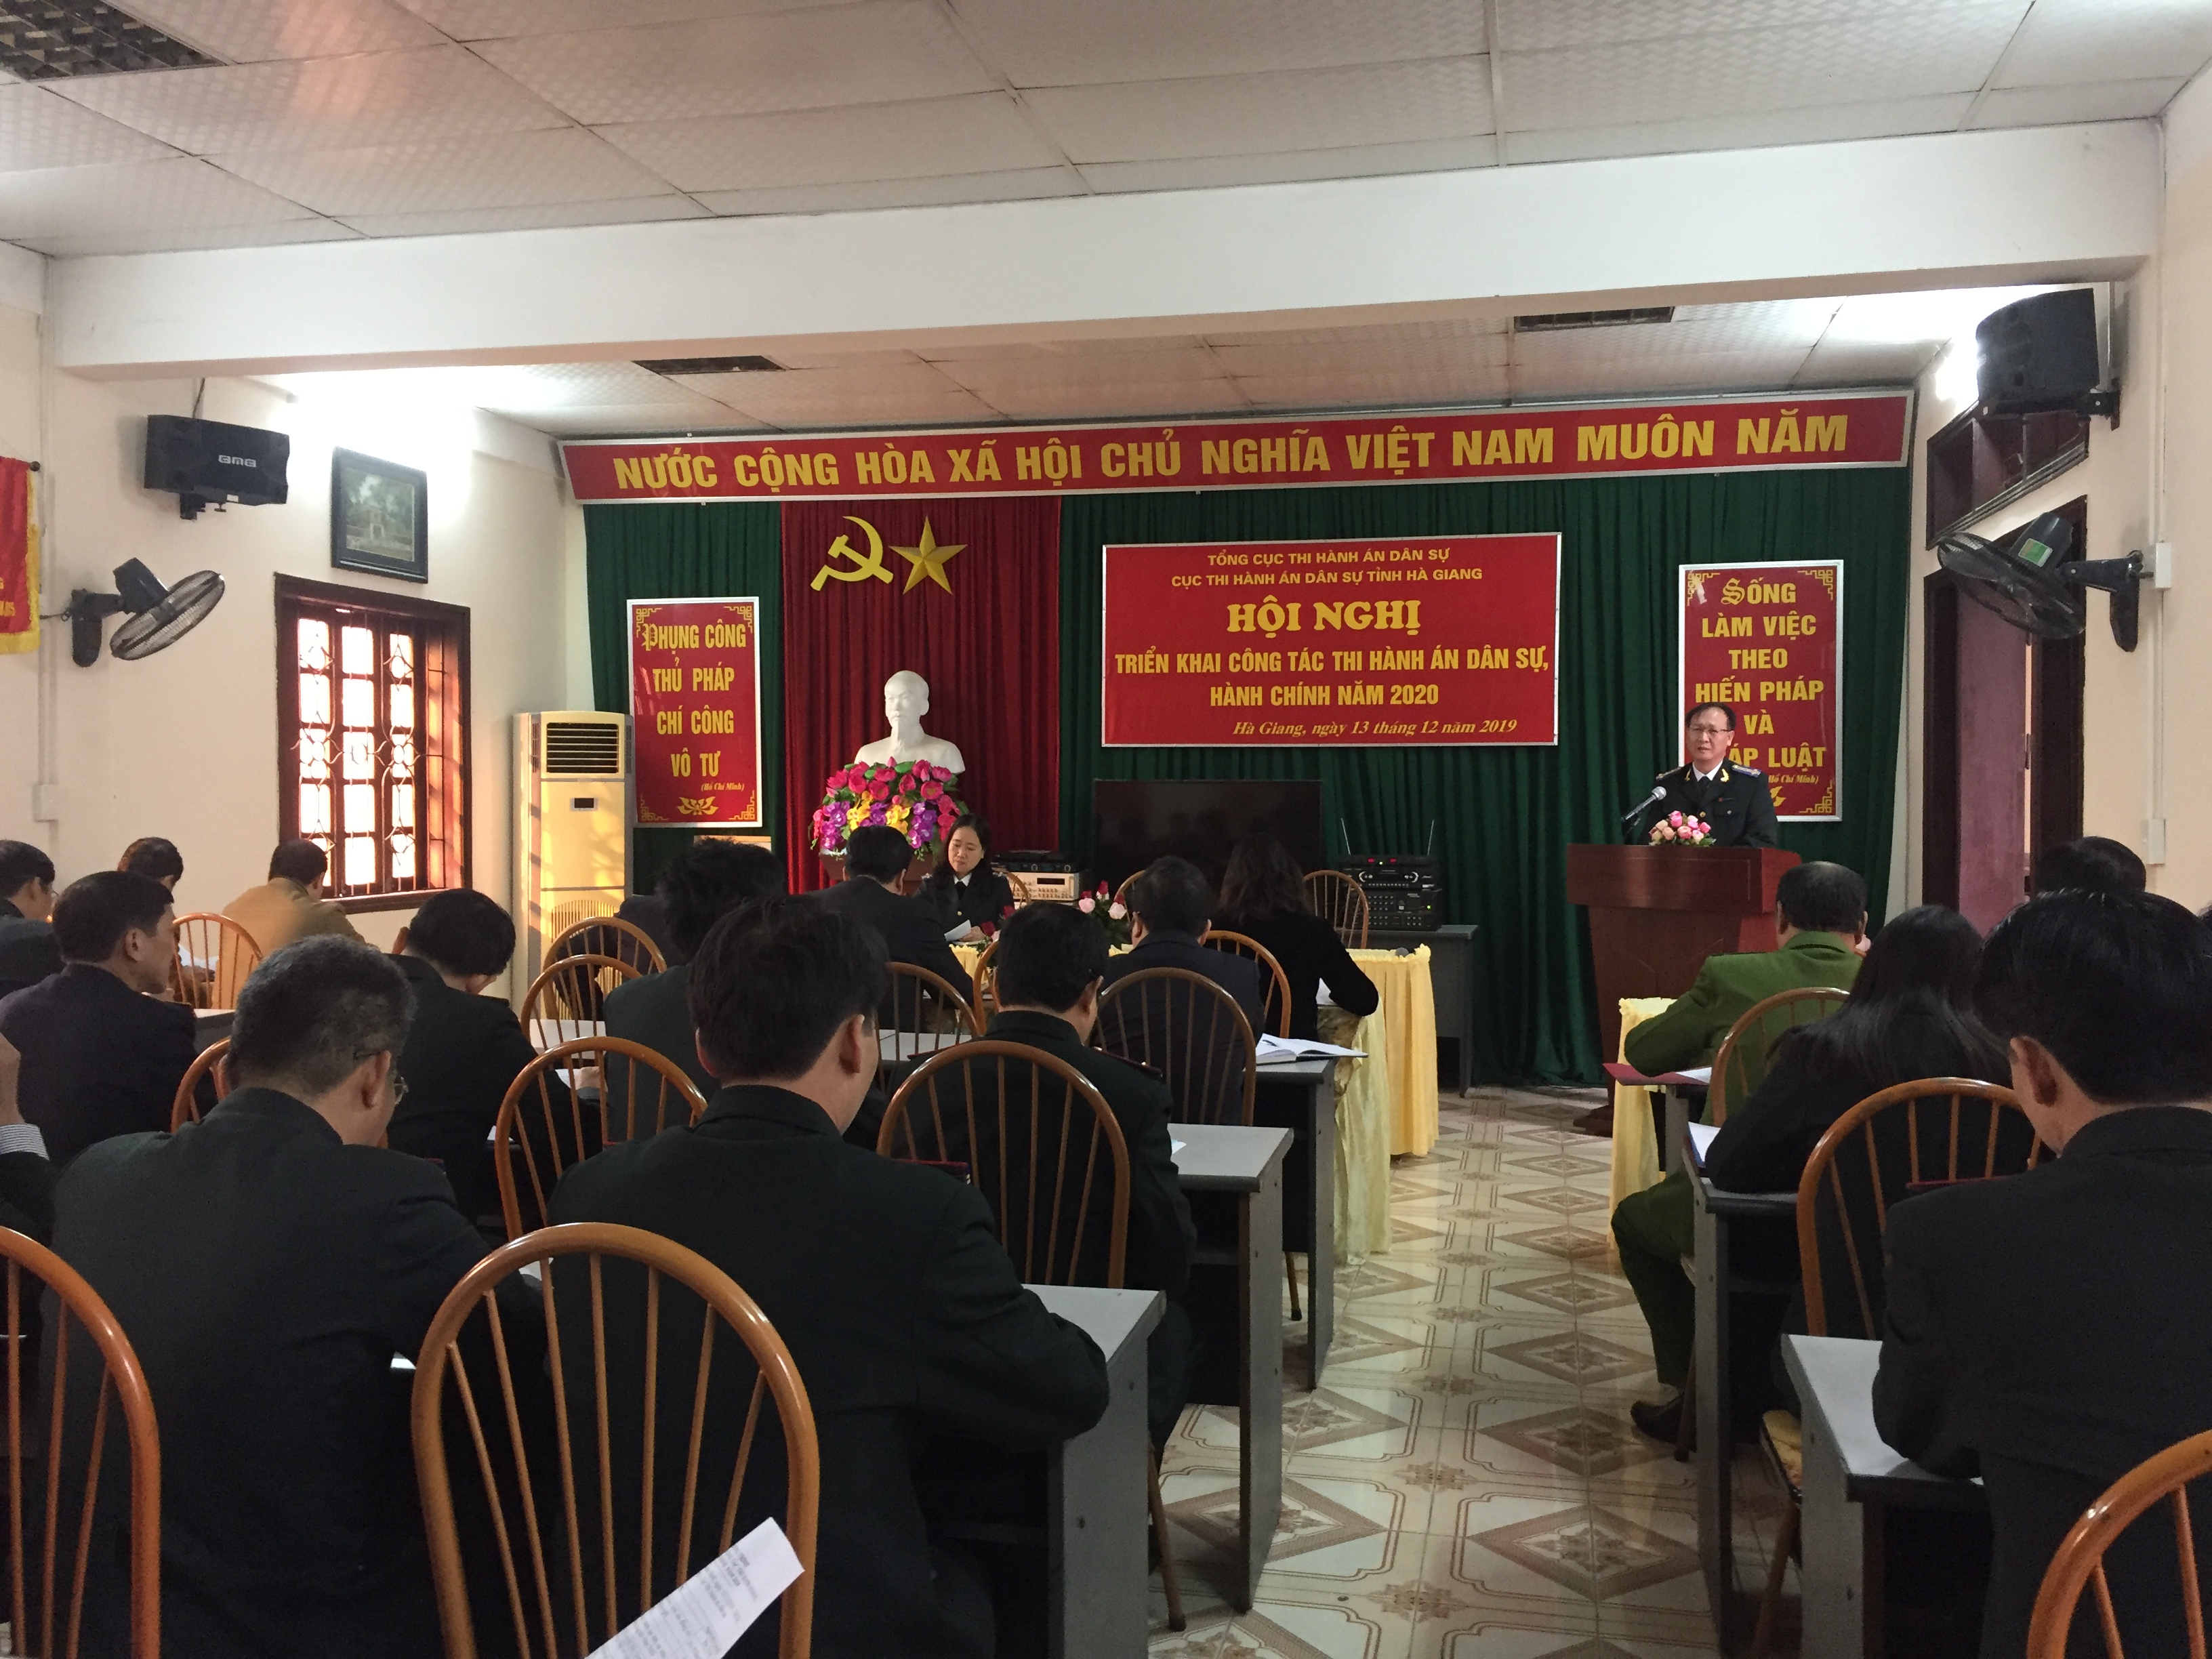 Cục THADS tỉnh Hà Giang tổng kết công tác thi hành án dân sự, hành chính năm 2019, triển khai nhiệm vụ năm 2020